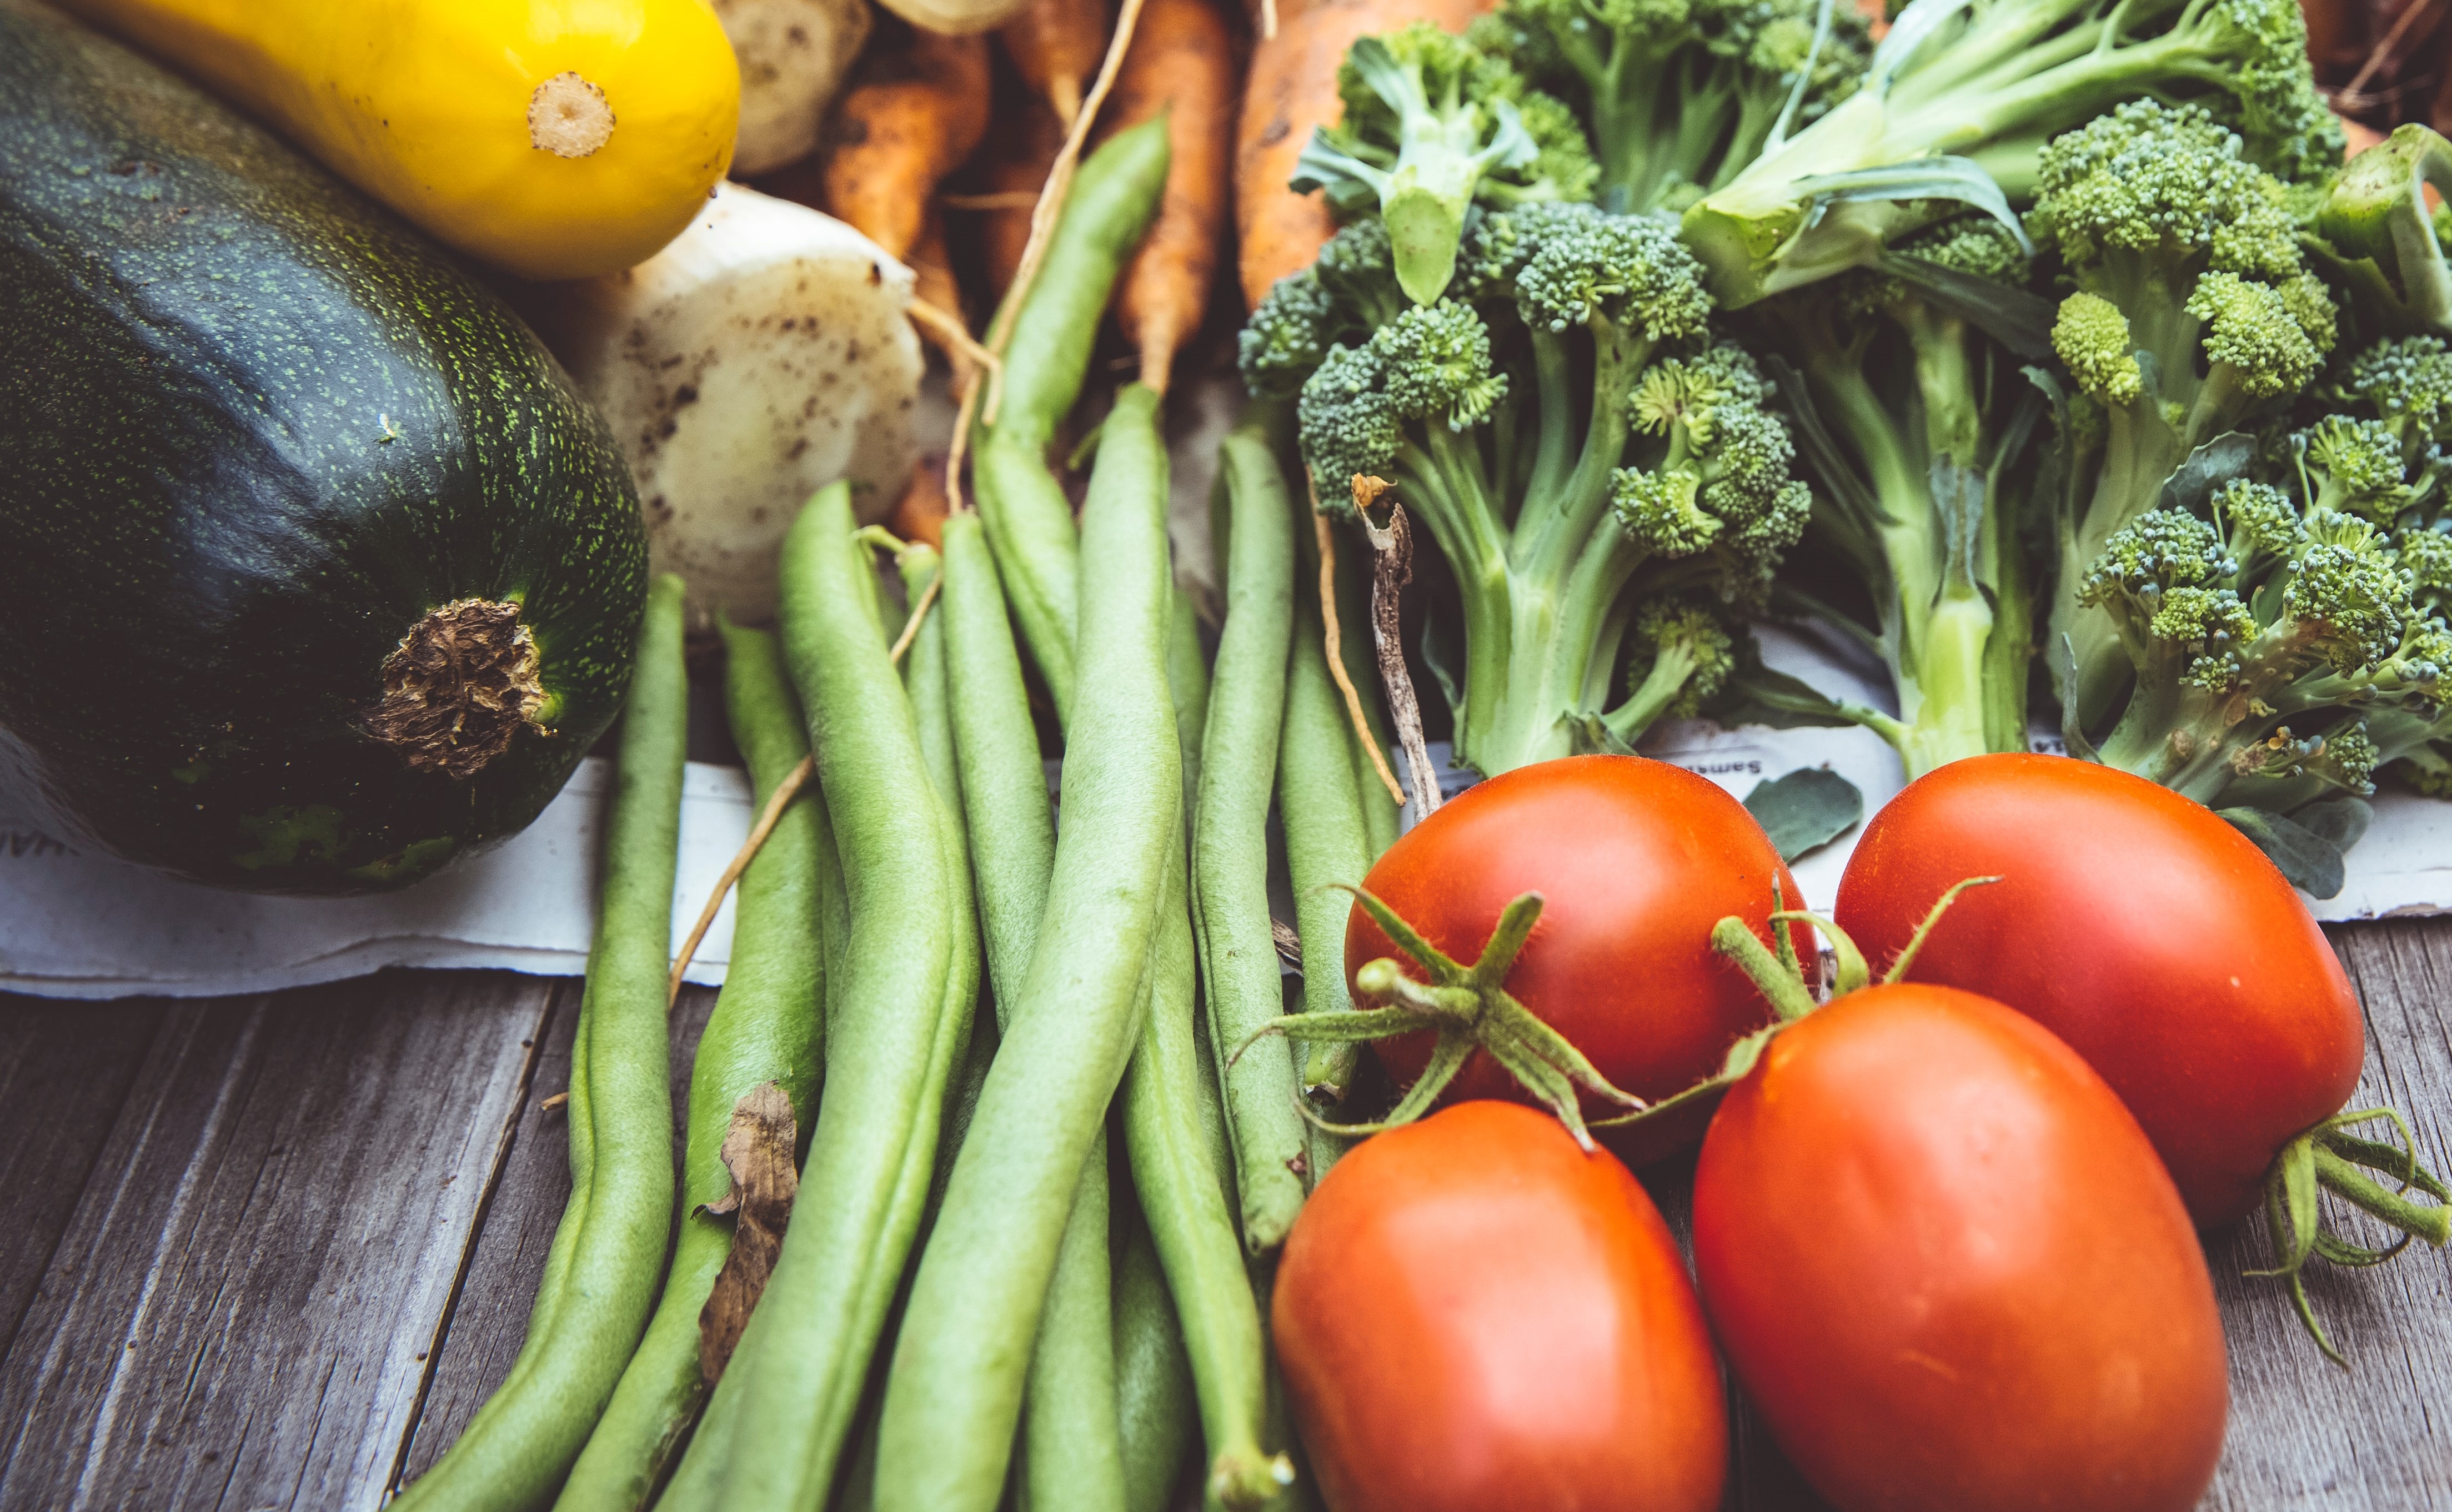 Ce spun nutriționiștii despre legumele și fructele cu pesticide